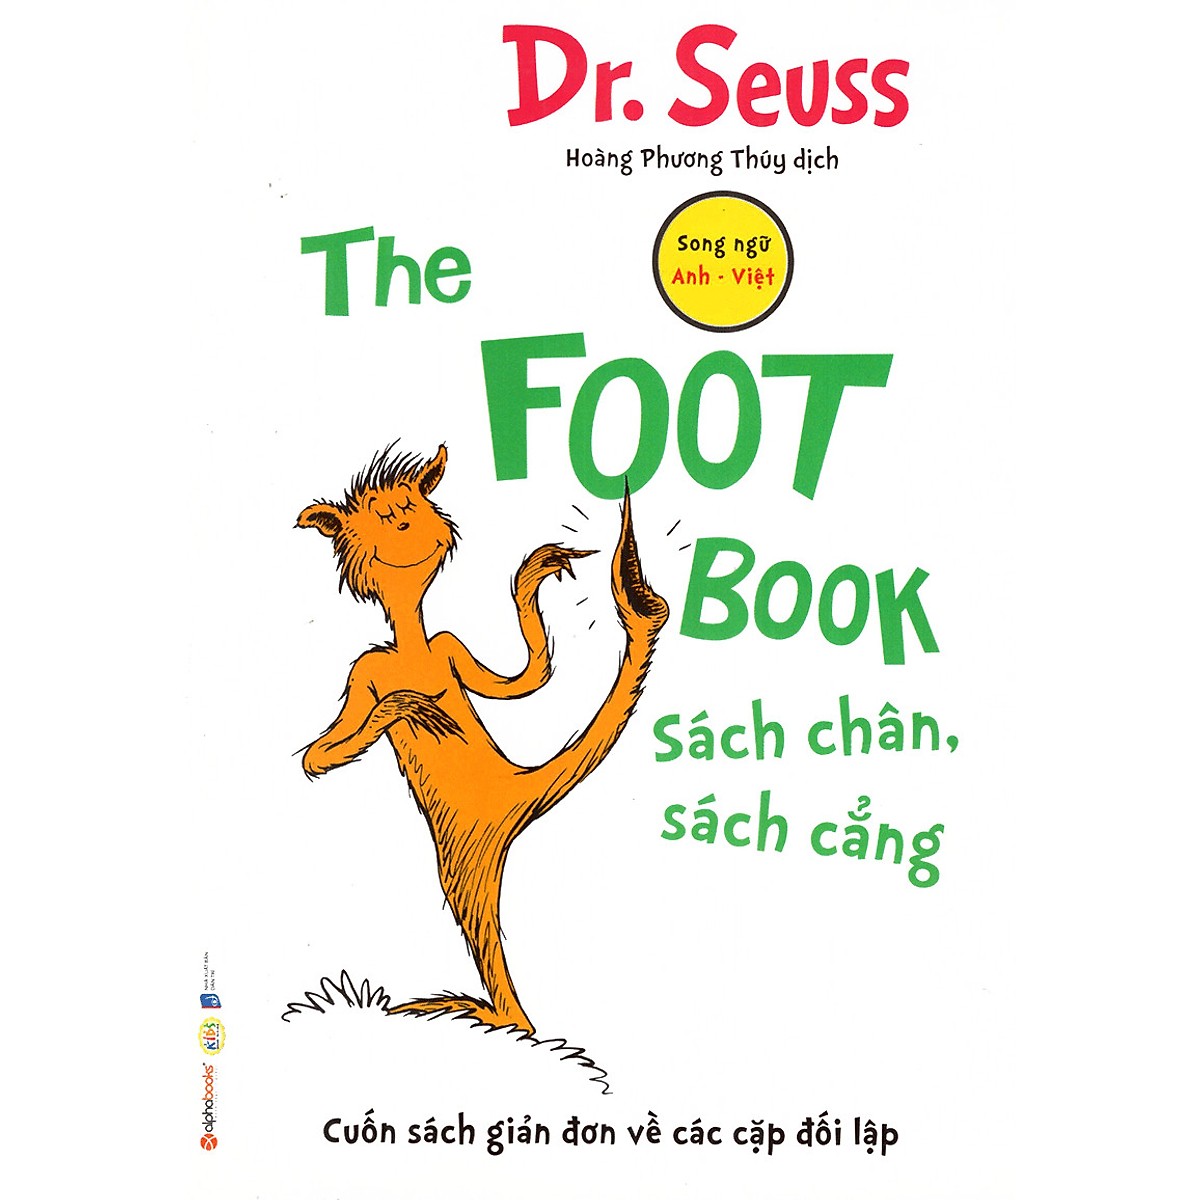 Bộ 8 Cuốn Sách Song Ngữ Dr. Seuss Kinh Điển Giúp Trẻ Học Tiếng Anh ( Tặng Boookmark Tuyệt Đẹp )